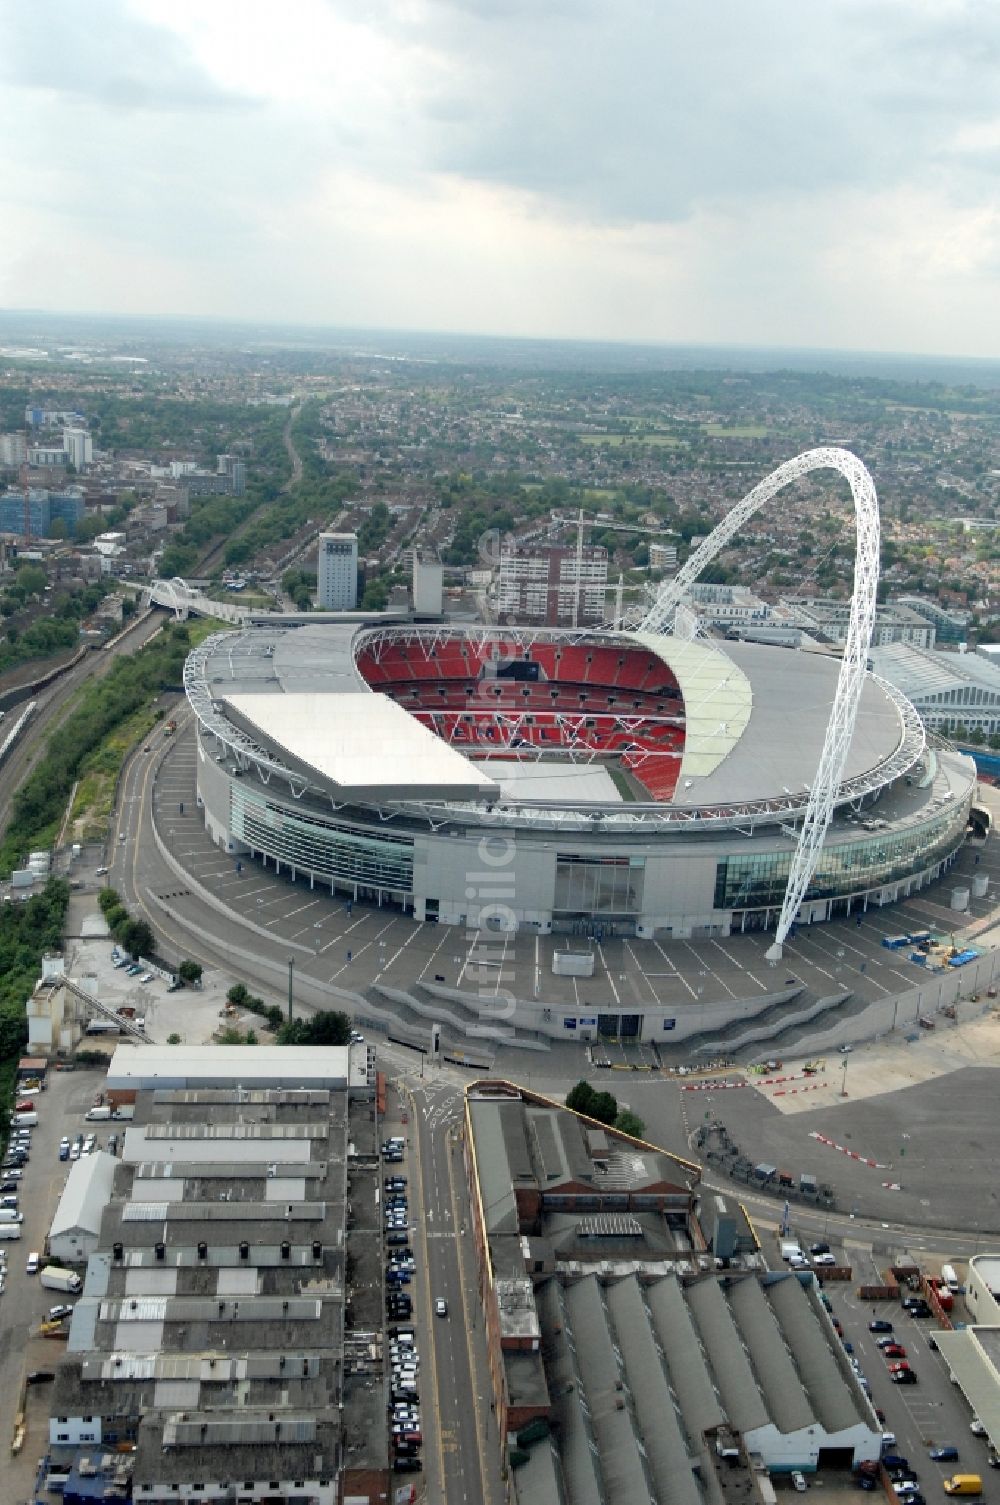 Luftbild London - Sportstätten-Gelände der Arena des Wembley- Stadion in London in England, Vereinigtes Königreich